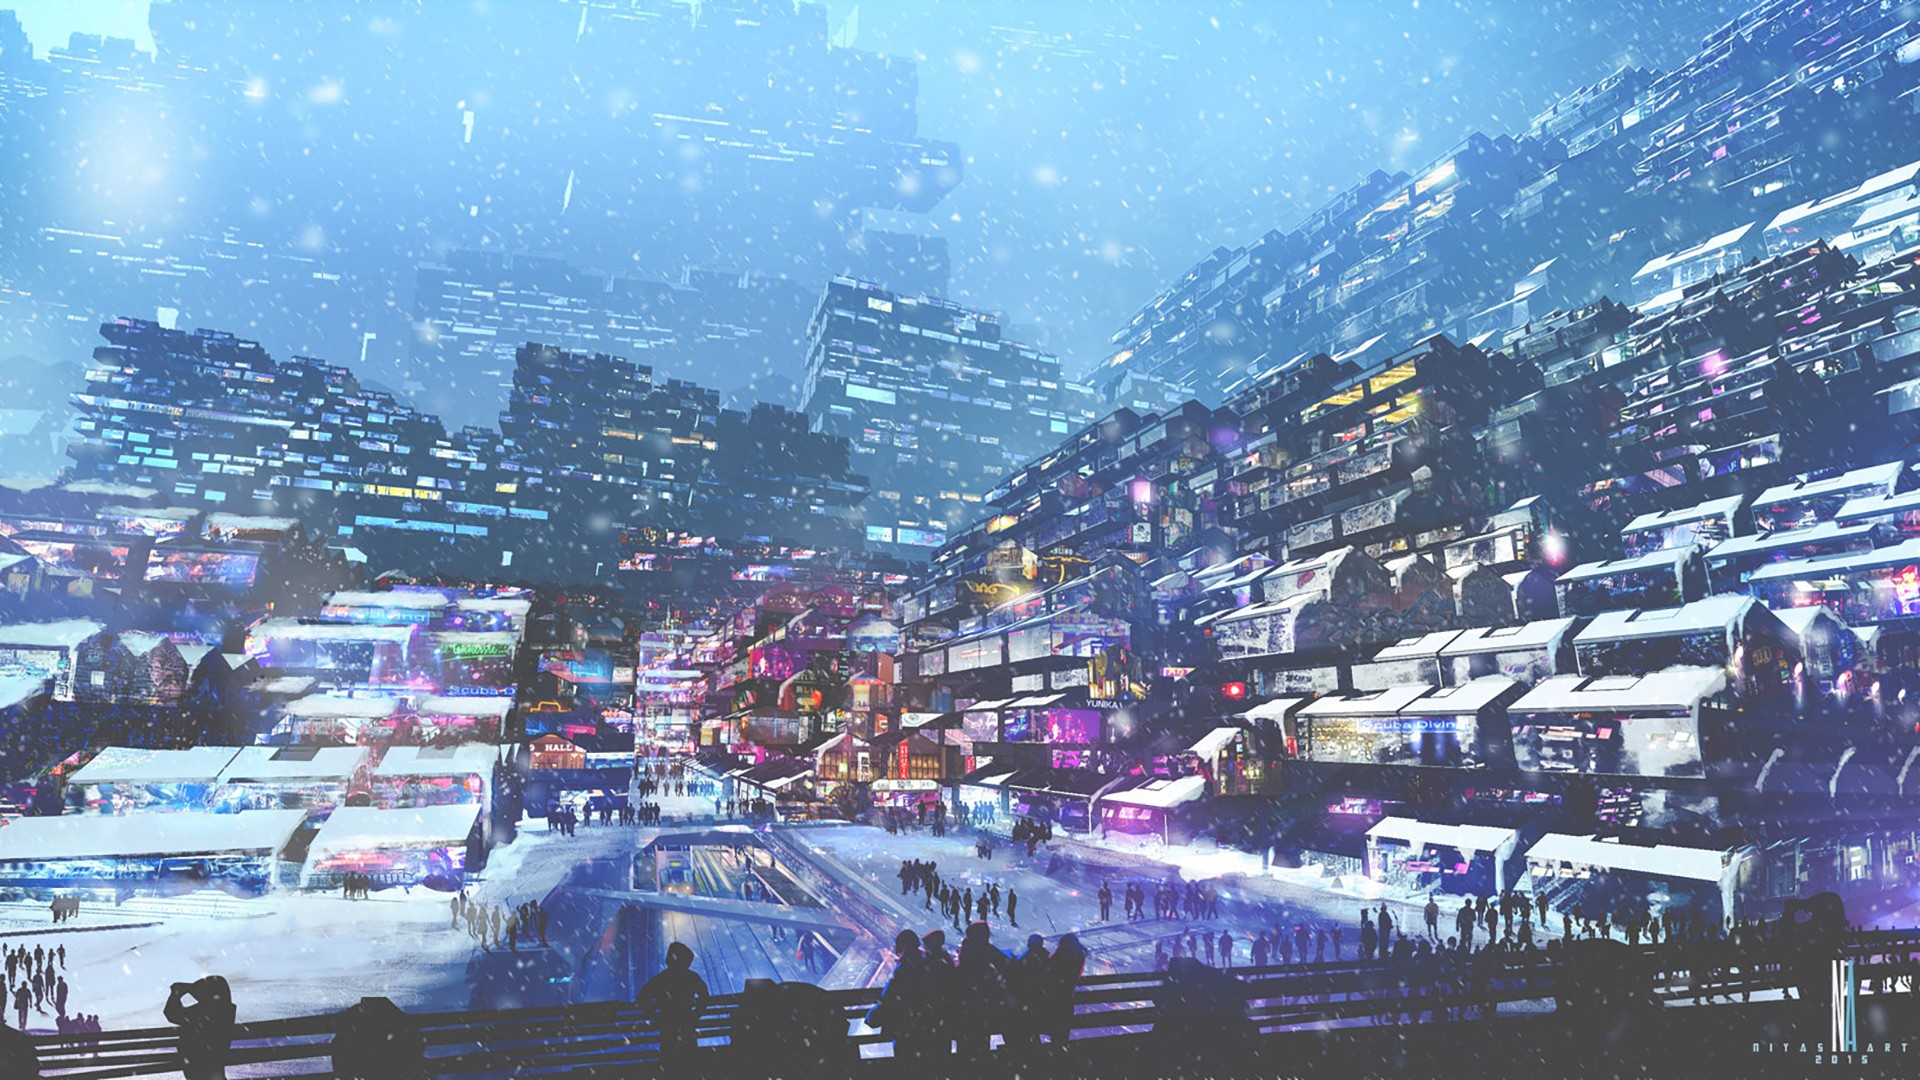 1920x1080 artwork digital art city futuristic cyberpunk snow lights people winter wallpaper JPG 565 kB